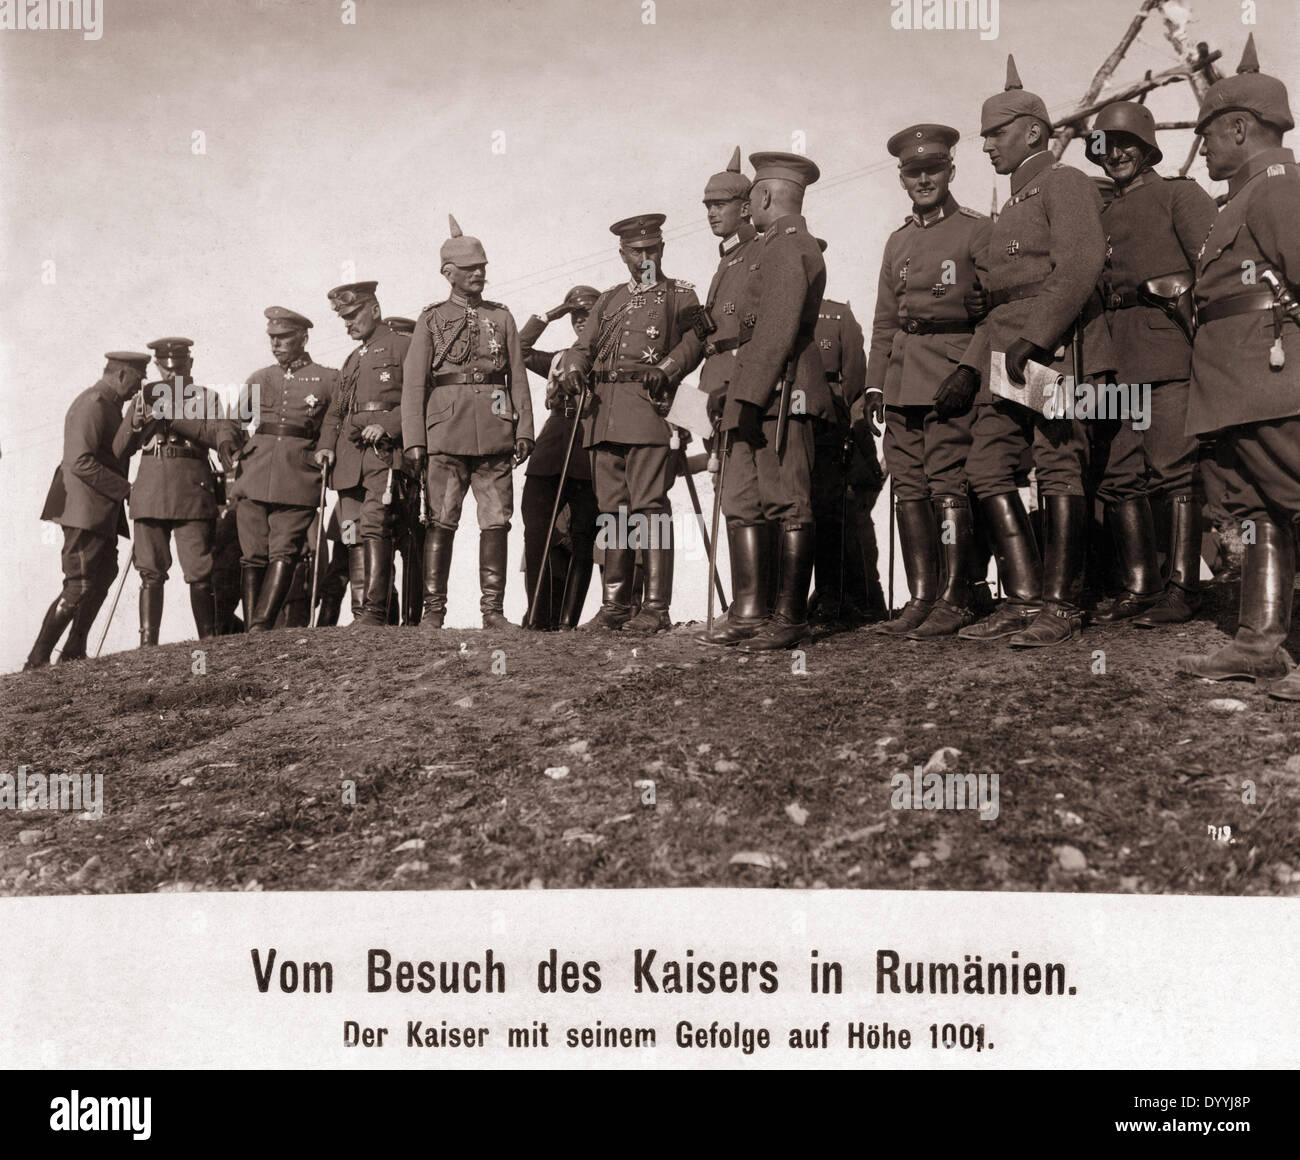 Wilhelm II. und August von Mackensen in Romania, 1917 Stock Photo